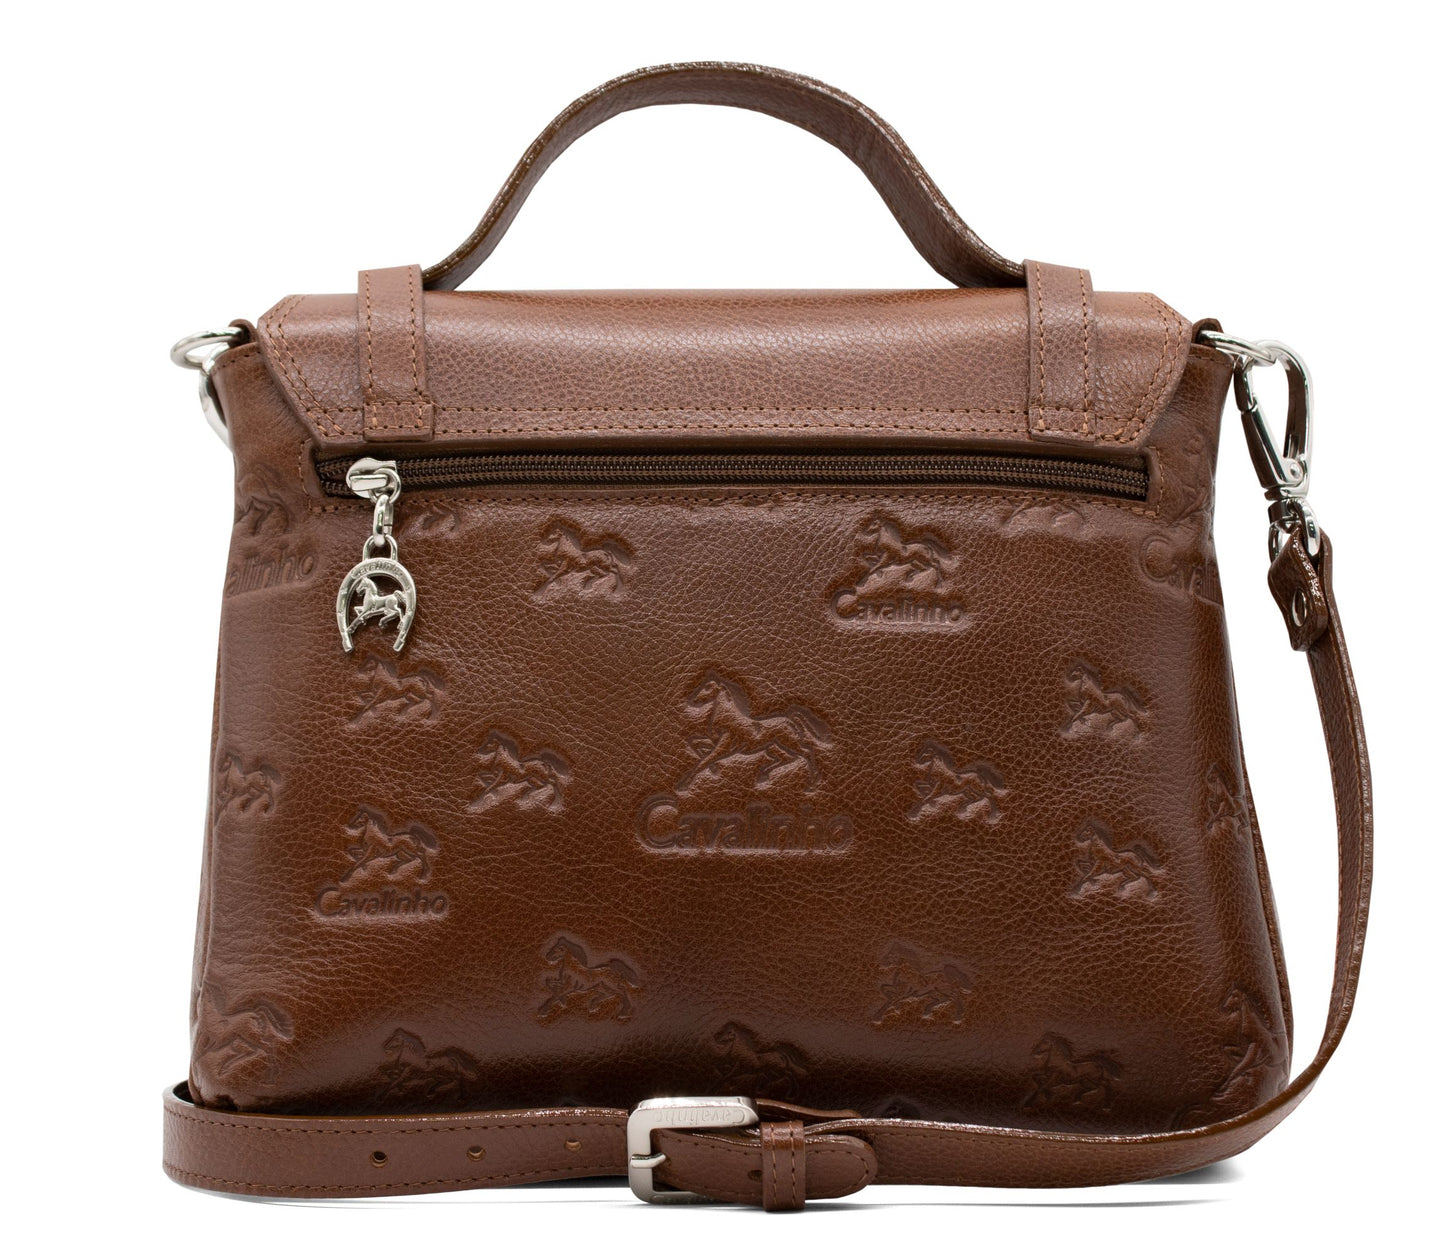 Cavalinho Signature Handbag - SaddleBrown - 18090404.13_3_8202f04a-61cf-4d50-97e7-d75f27e01530